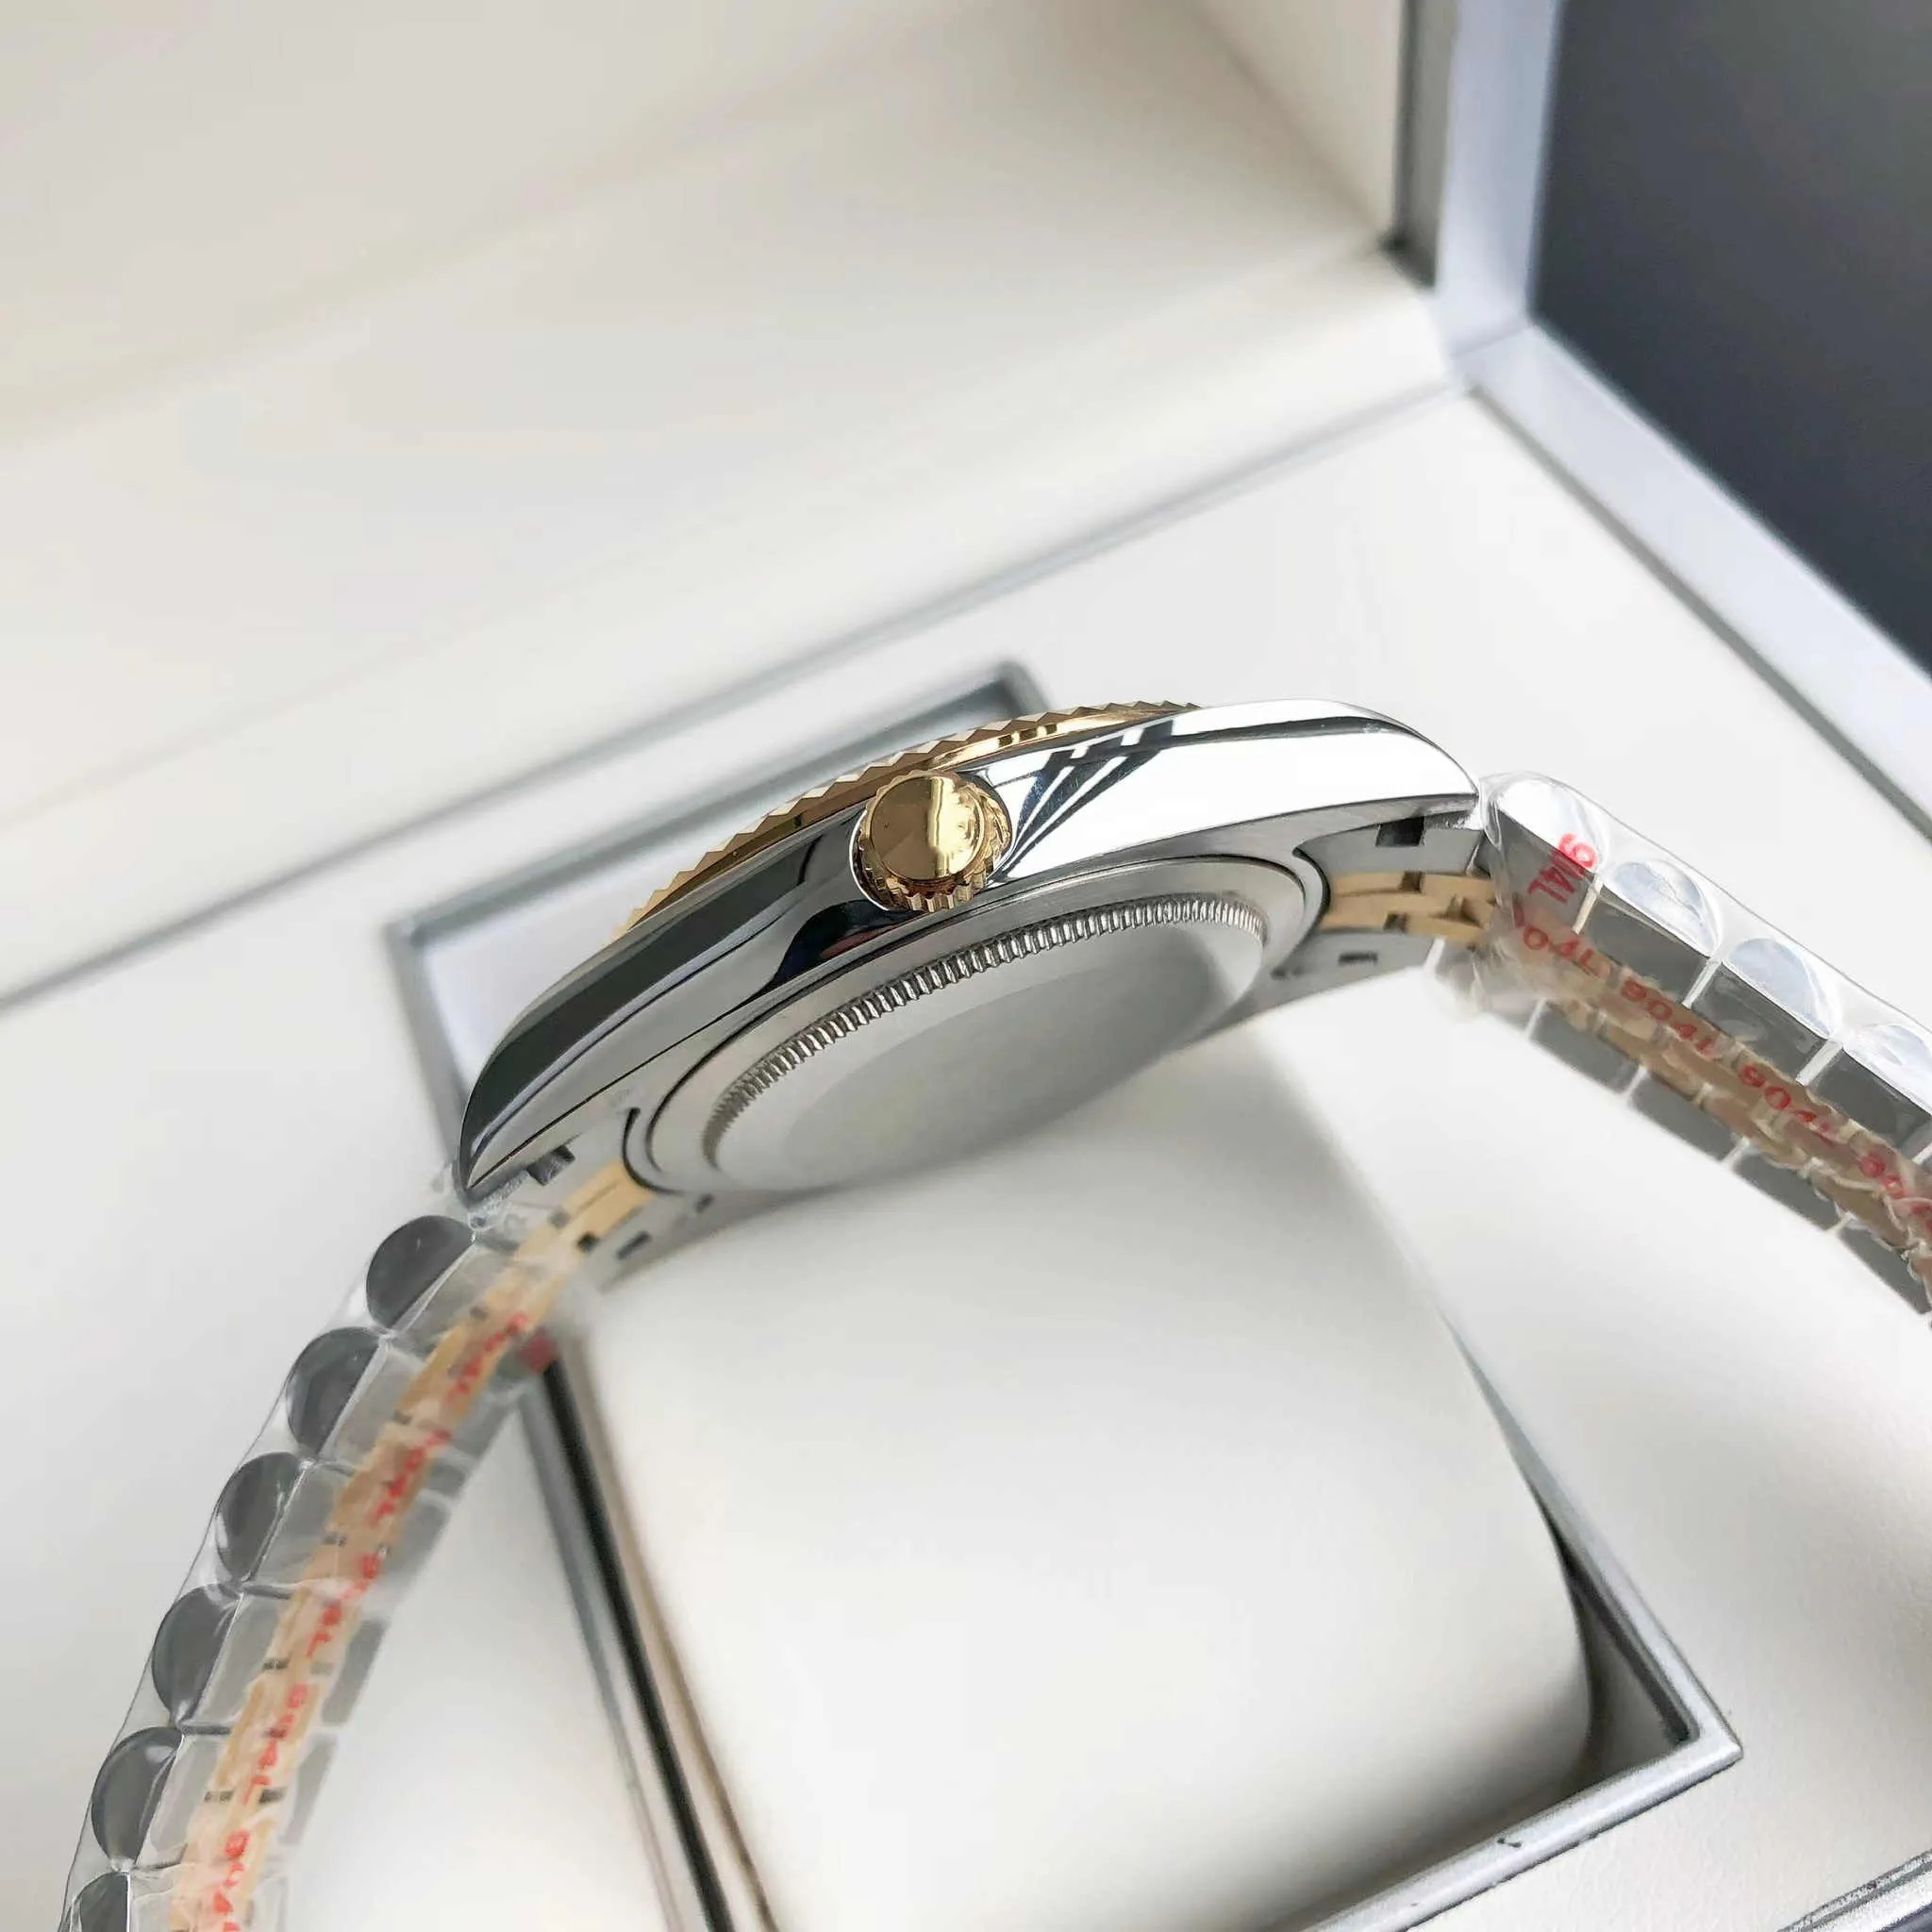 Полностью автоматические женские часы, роскошный модный циферблат, 36 мм, мастер-дизайн, качество ААА, складная пряжка, сапфировое стекло, звезда business248z